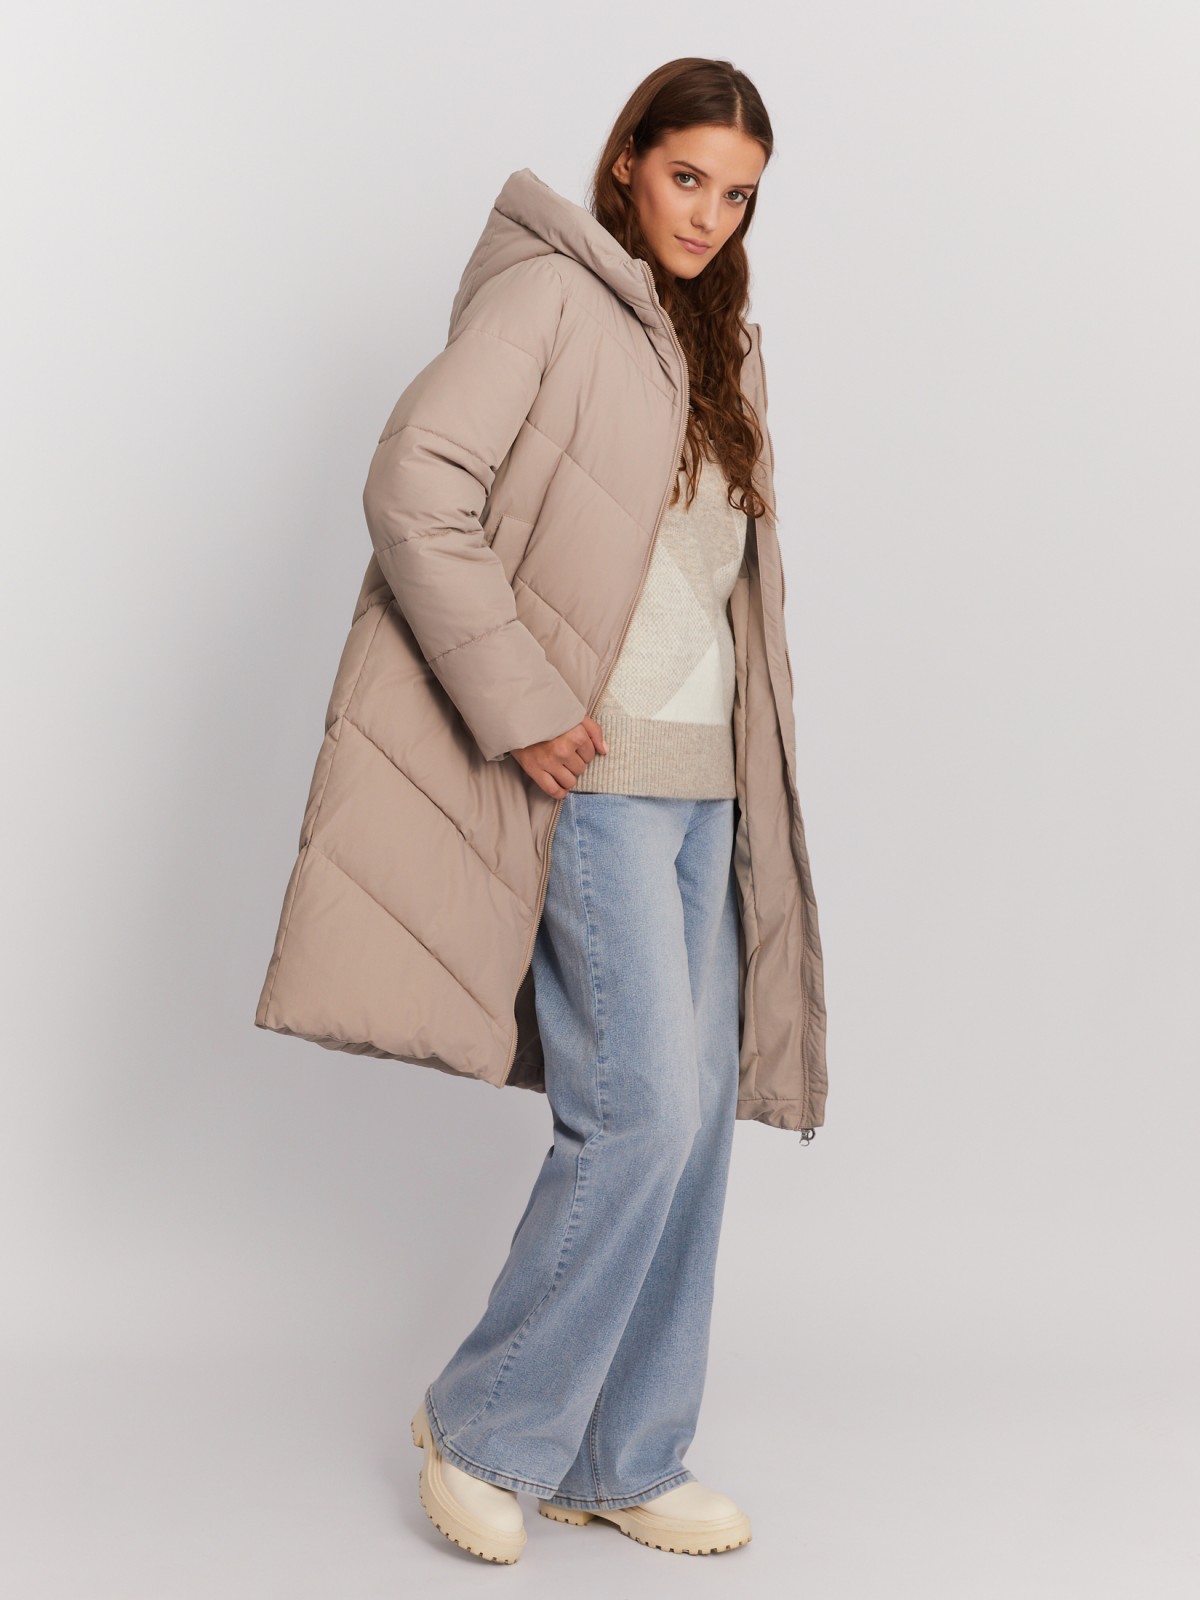 Тёплая стёганая куртка-пальто удлинённого фасона с капюшоном